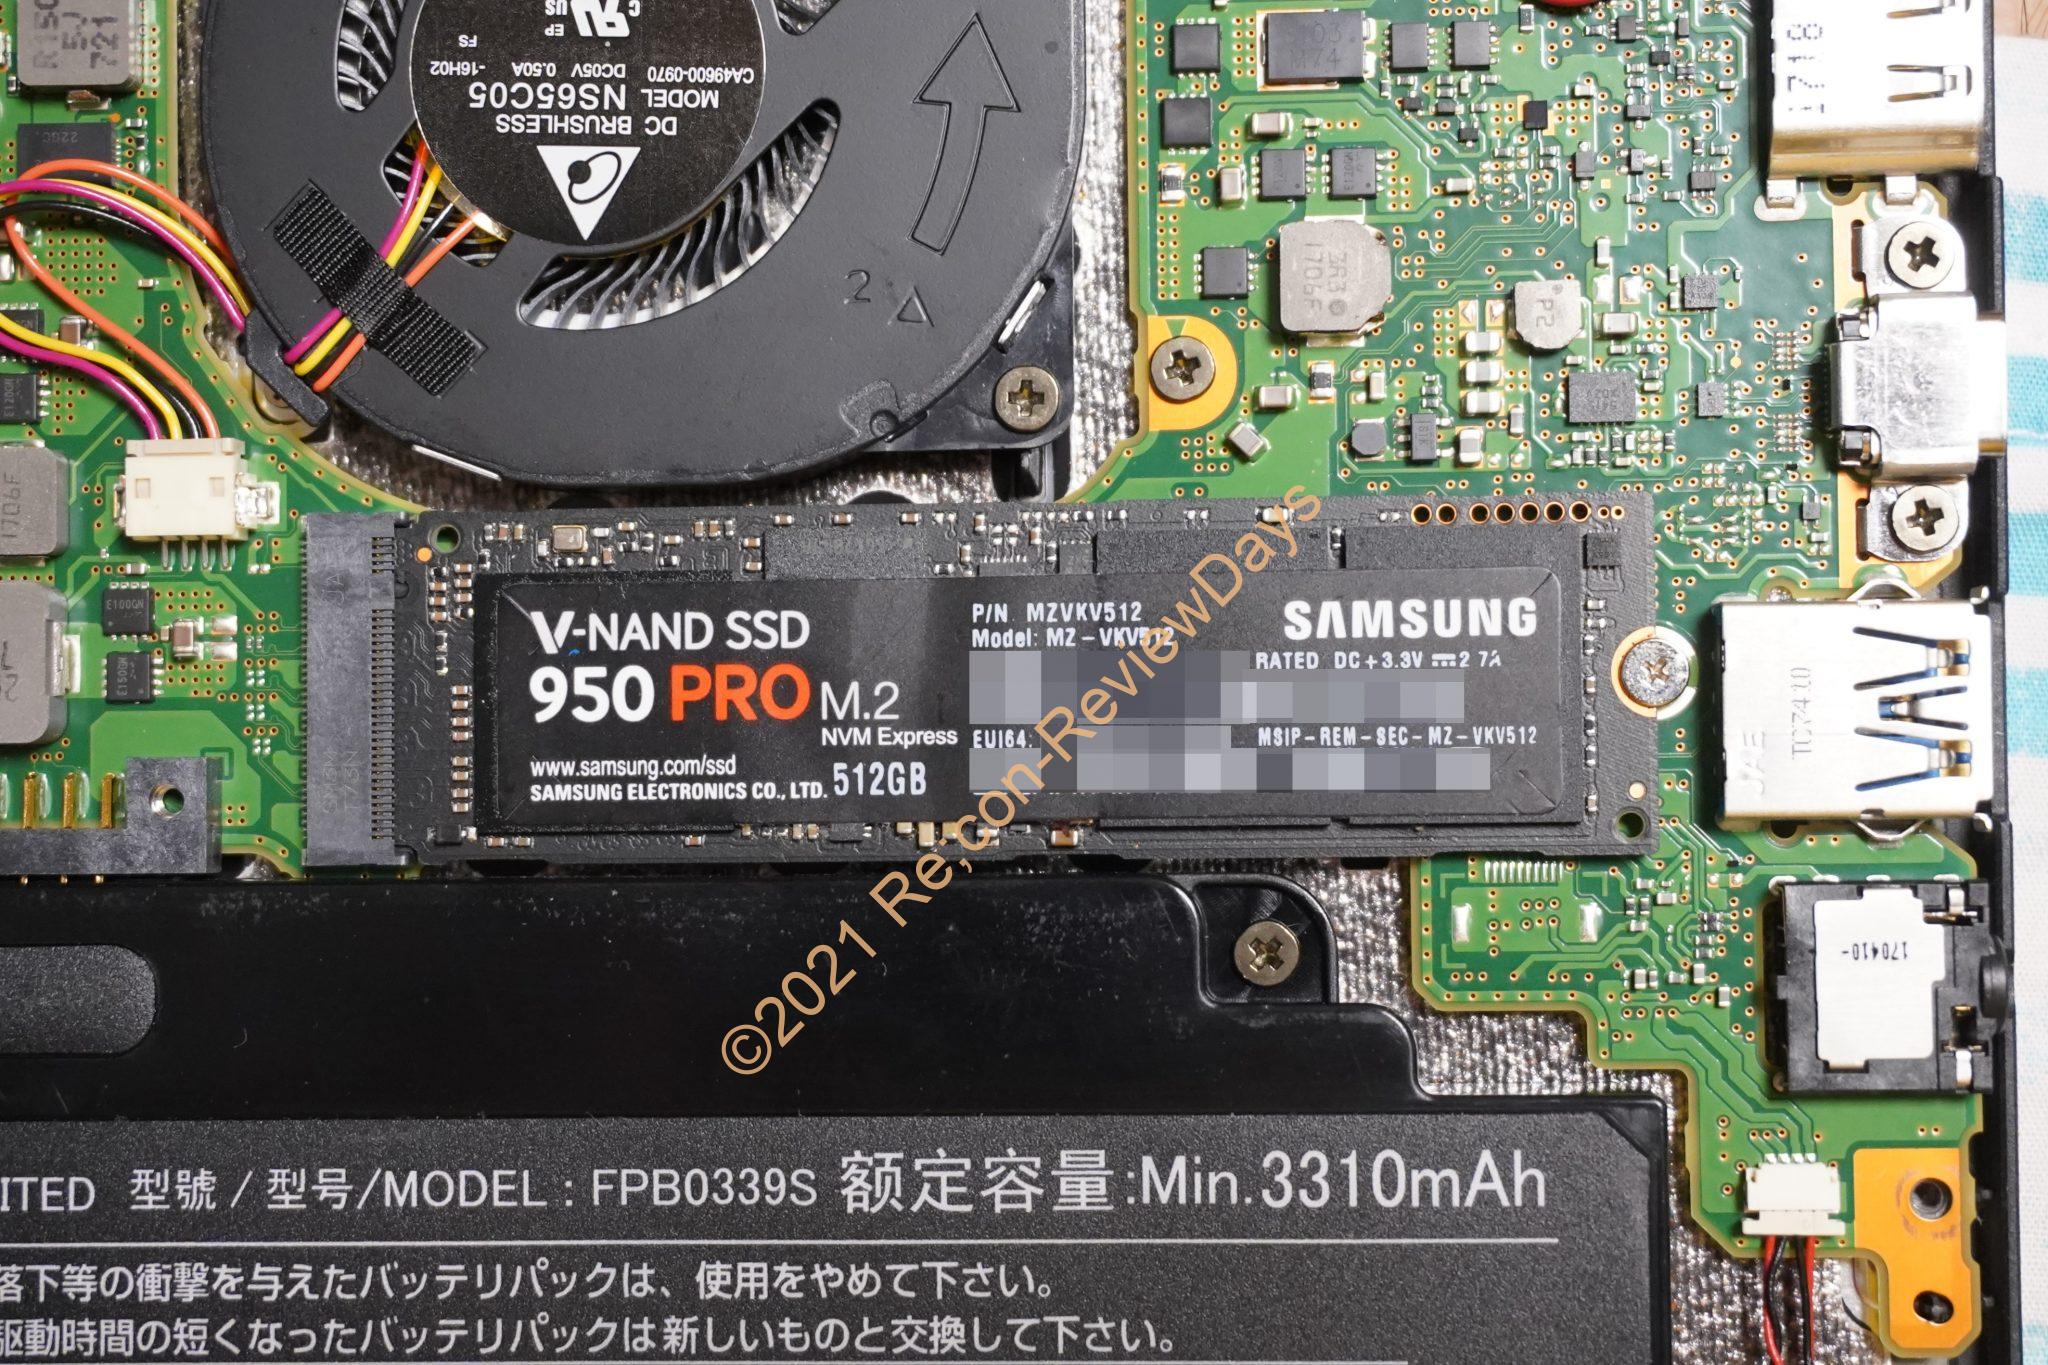 富士通製のLIFEBOOK UH75/B1 FMVU75B1RのM.2スロットはNVMe SSDに非対応 #富士通 #Fujitsu #LIFEBOOK #SSD